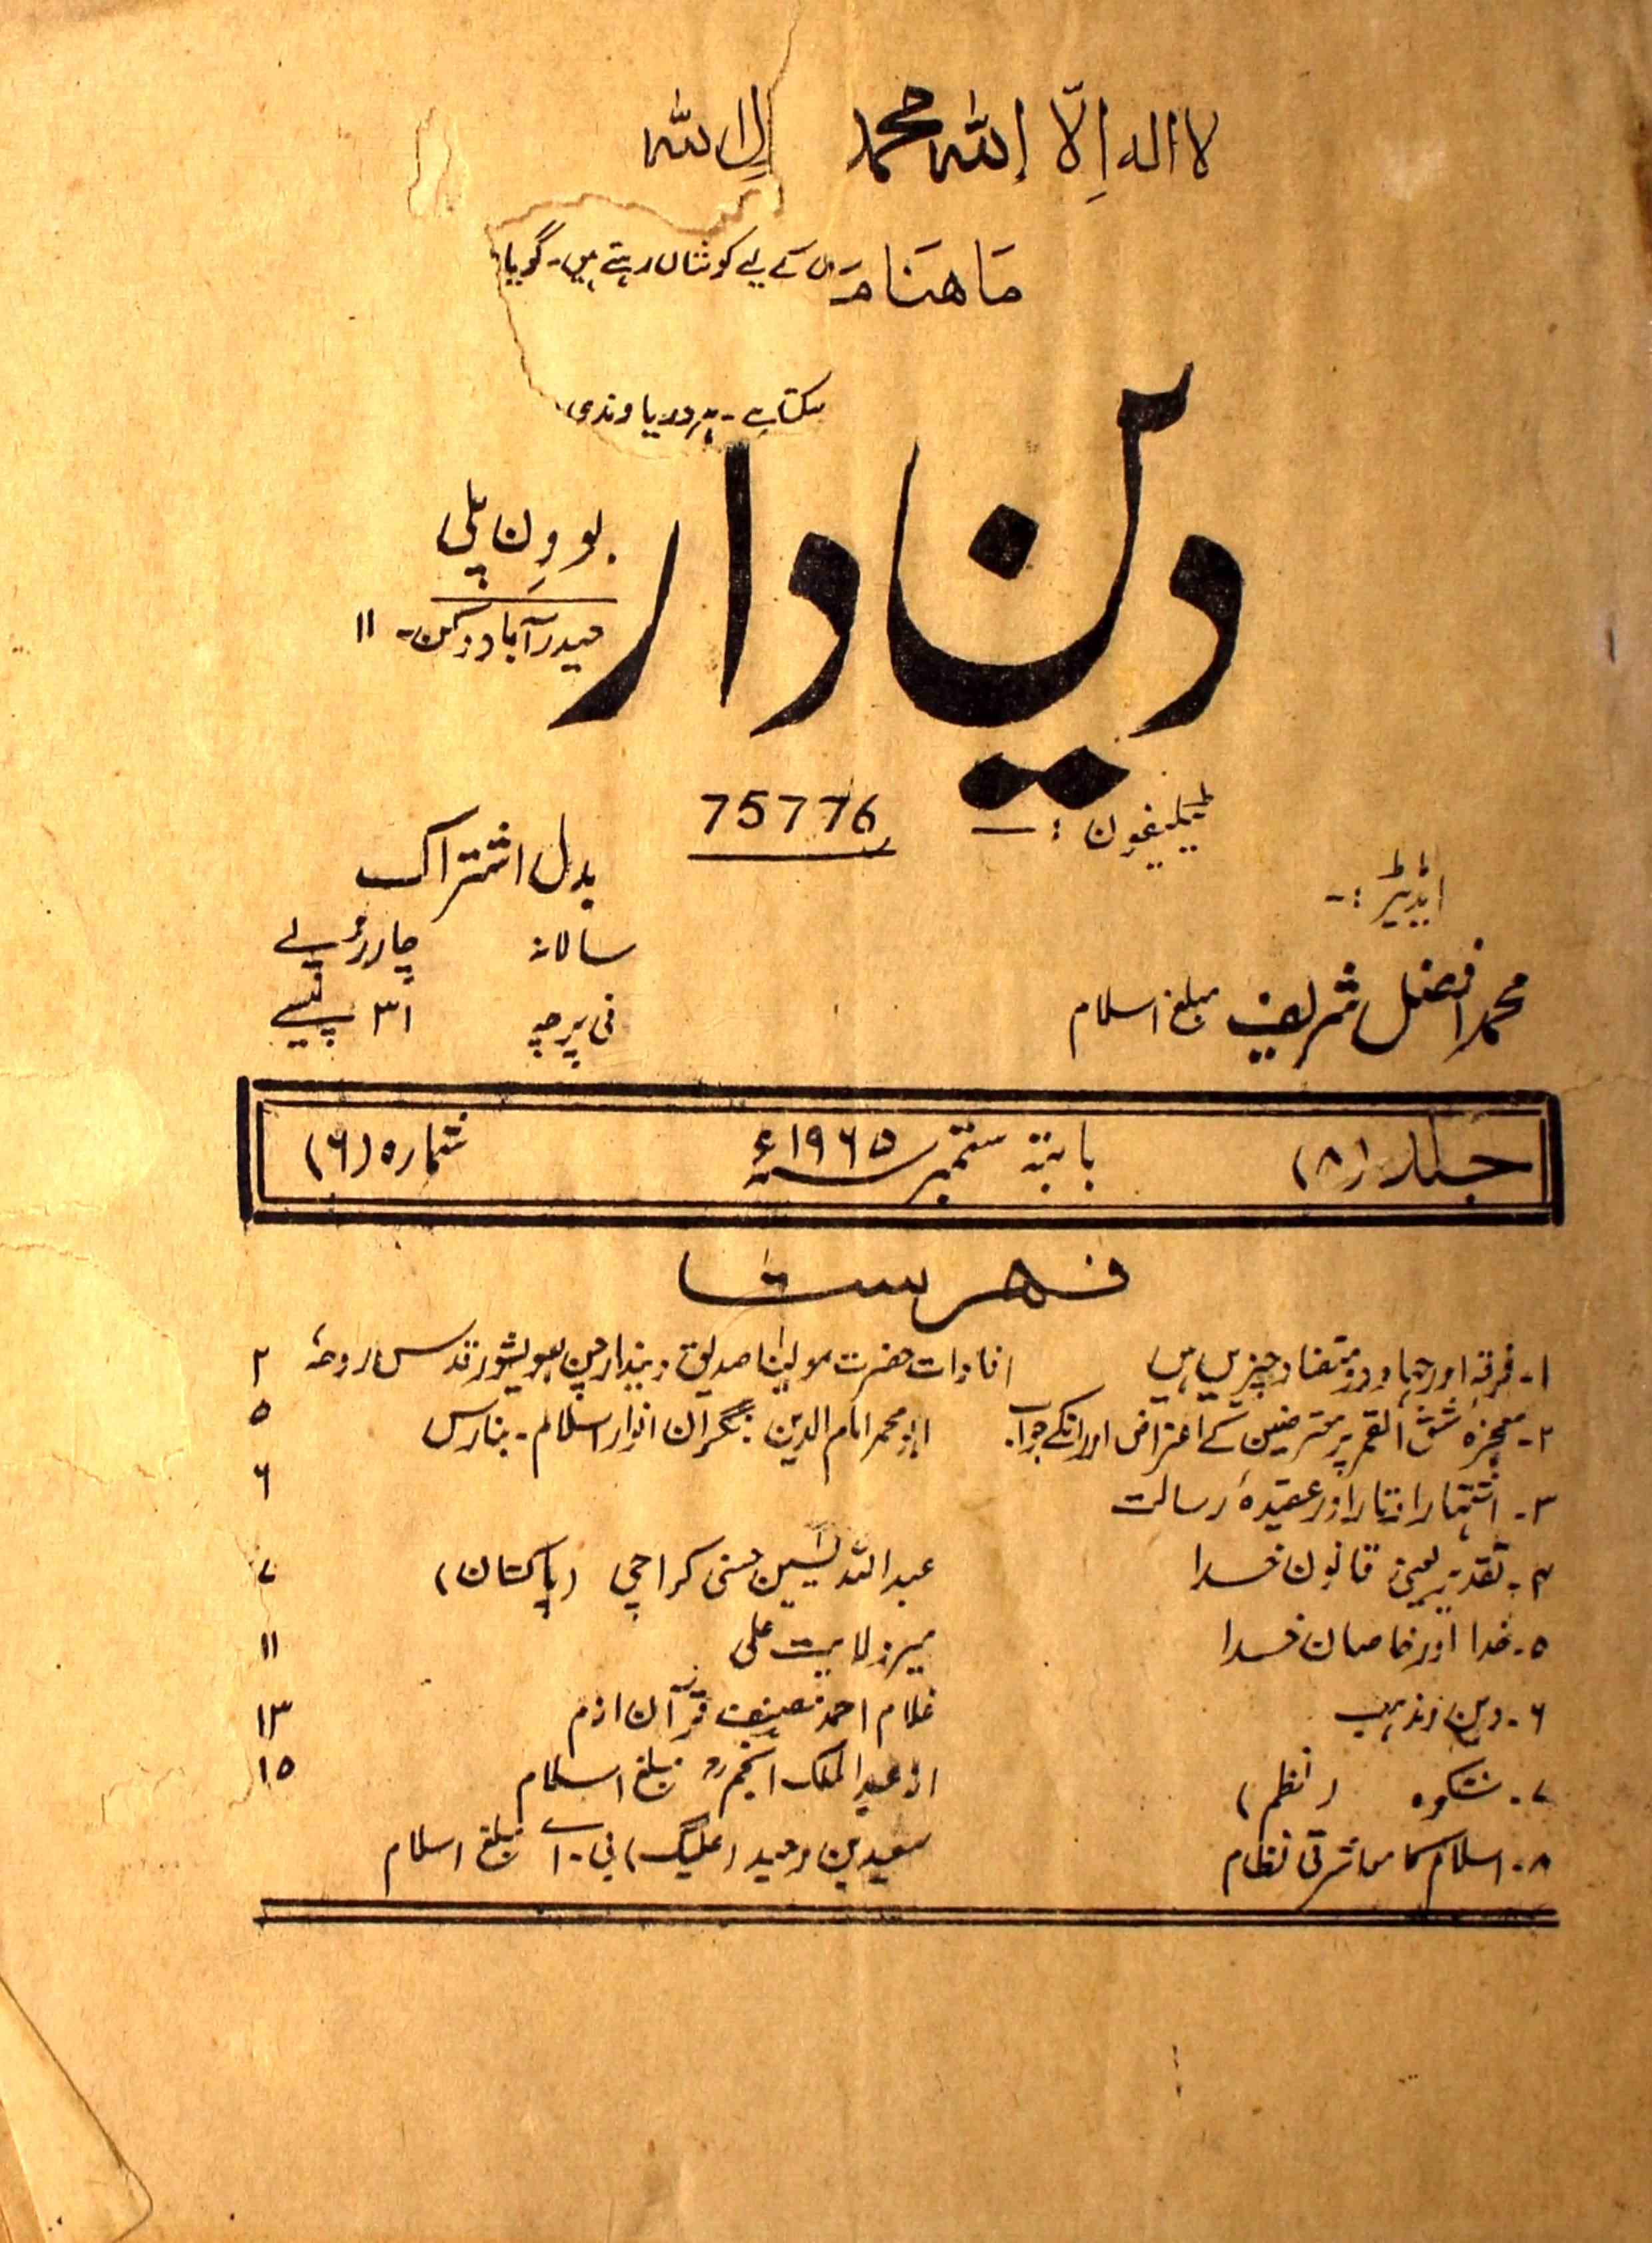 Deendar Jild 8 Shumara 6 September 1965-Svk-Shumara Number-006